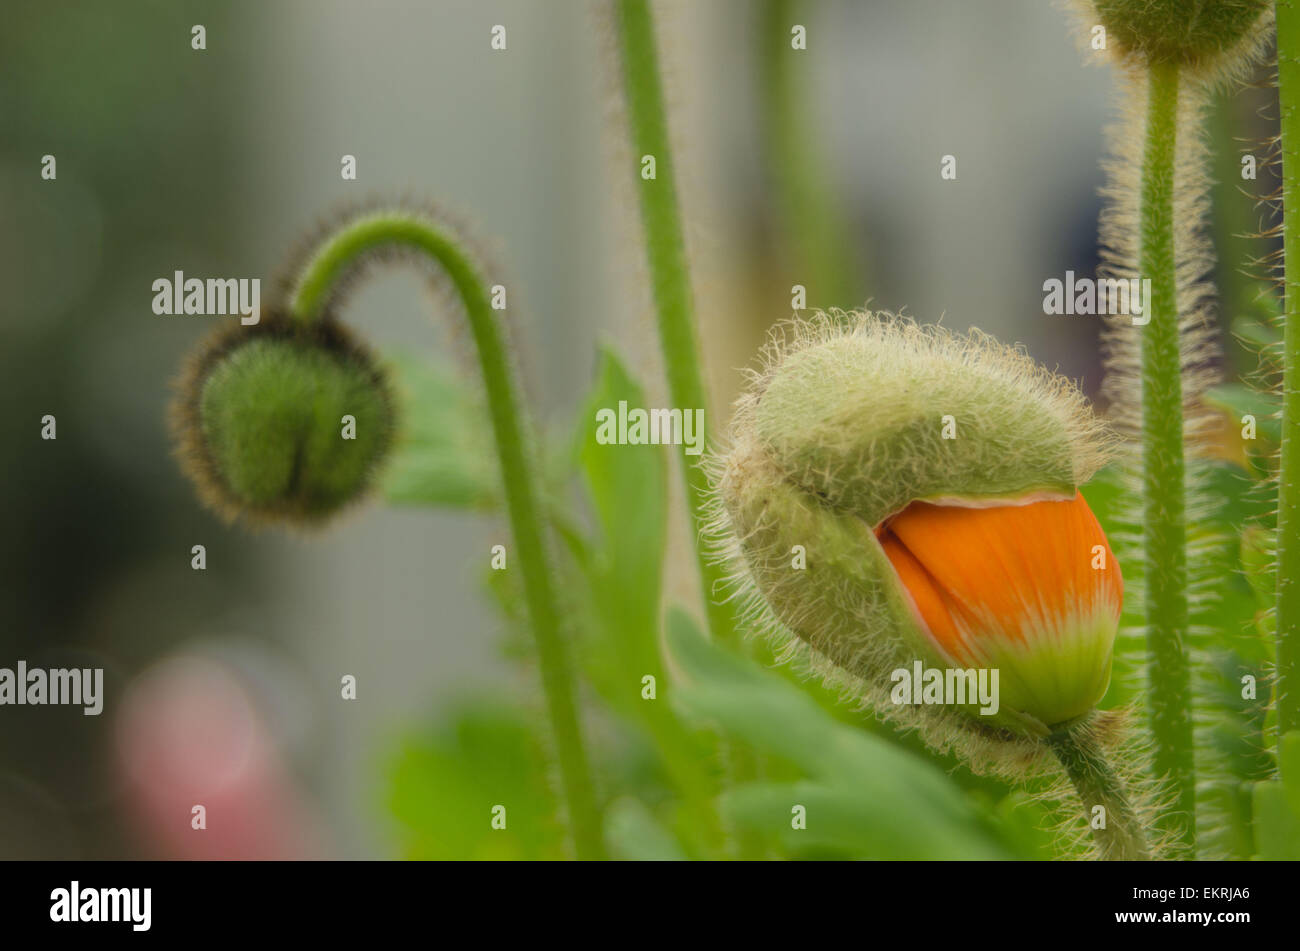 Iceland Poppy buds (Papaver nudicaule) Stock Photo